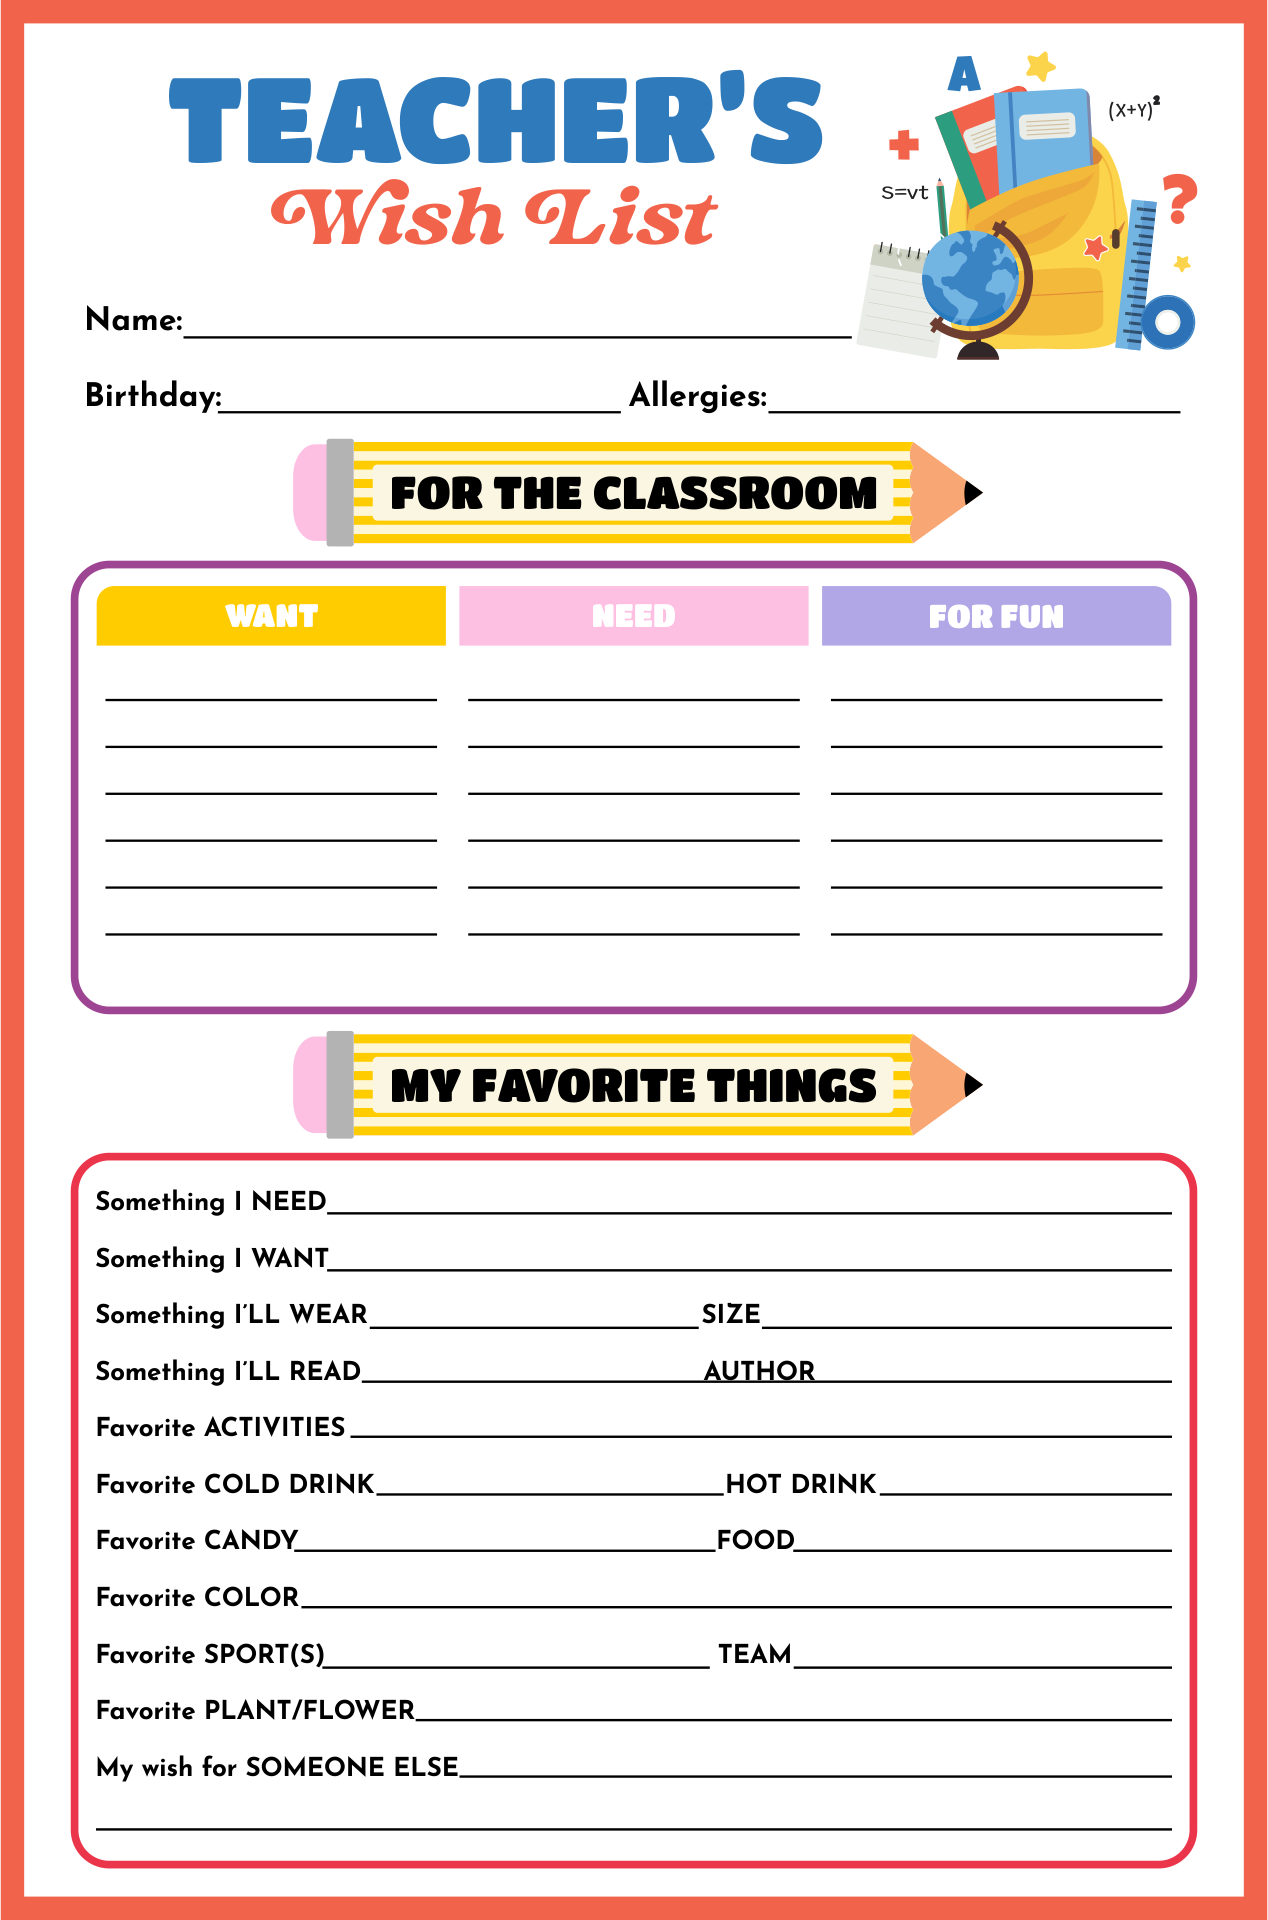 Teacher Wish List Template